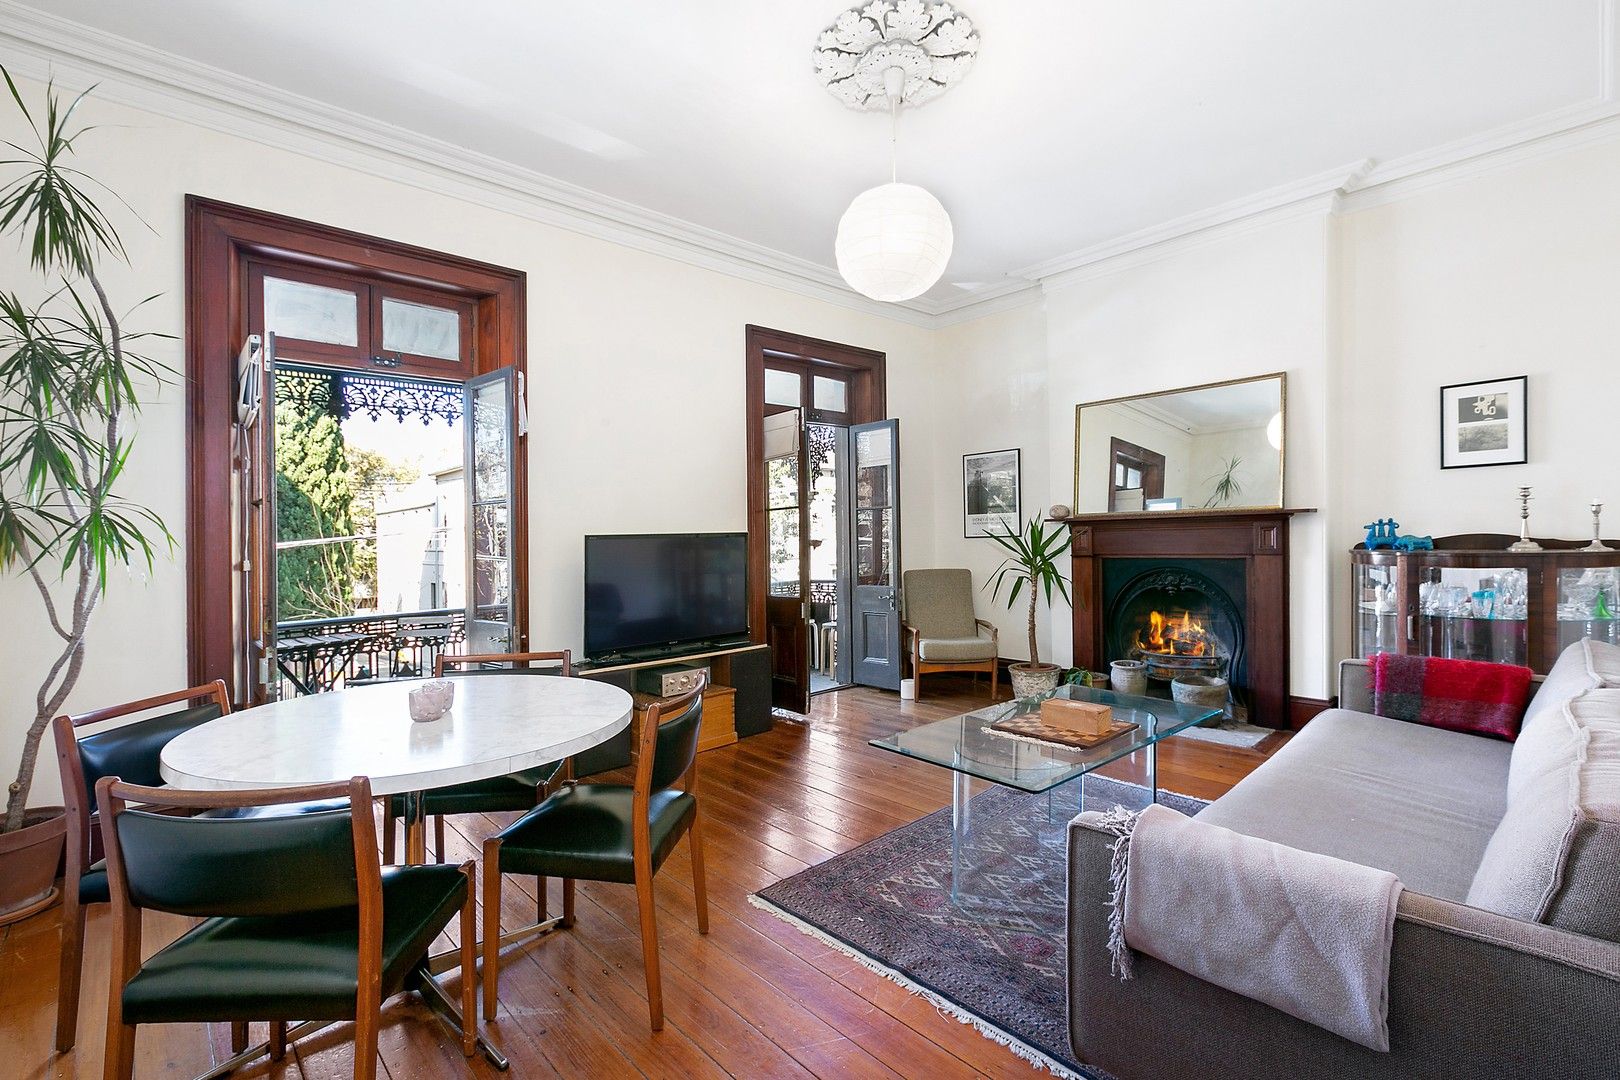 5 bedrooms House in 74 Pitt Street REDFERN NSW, 2016